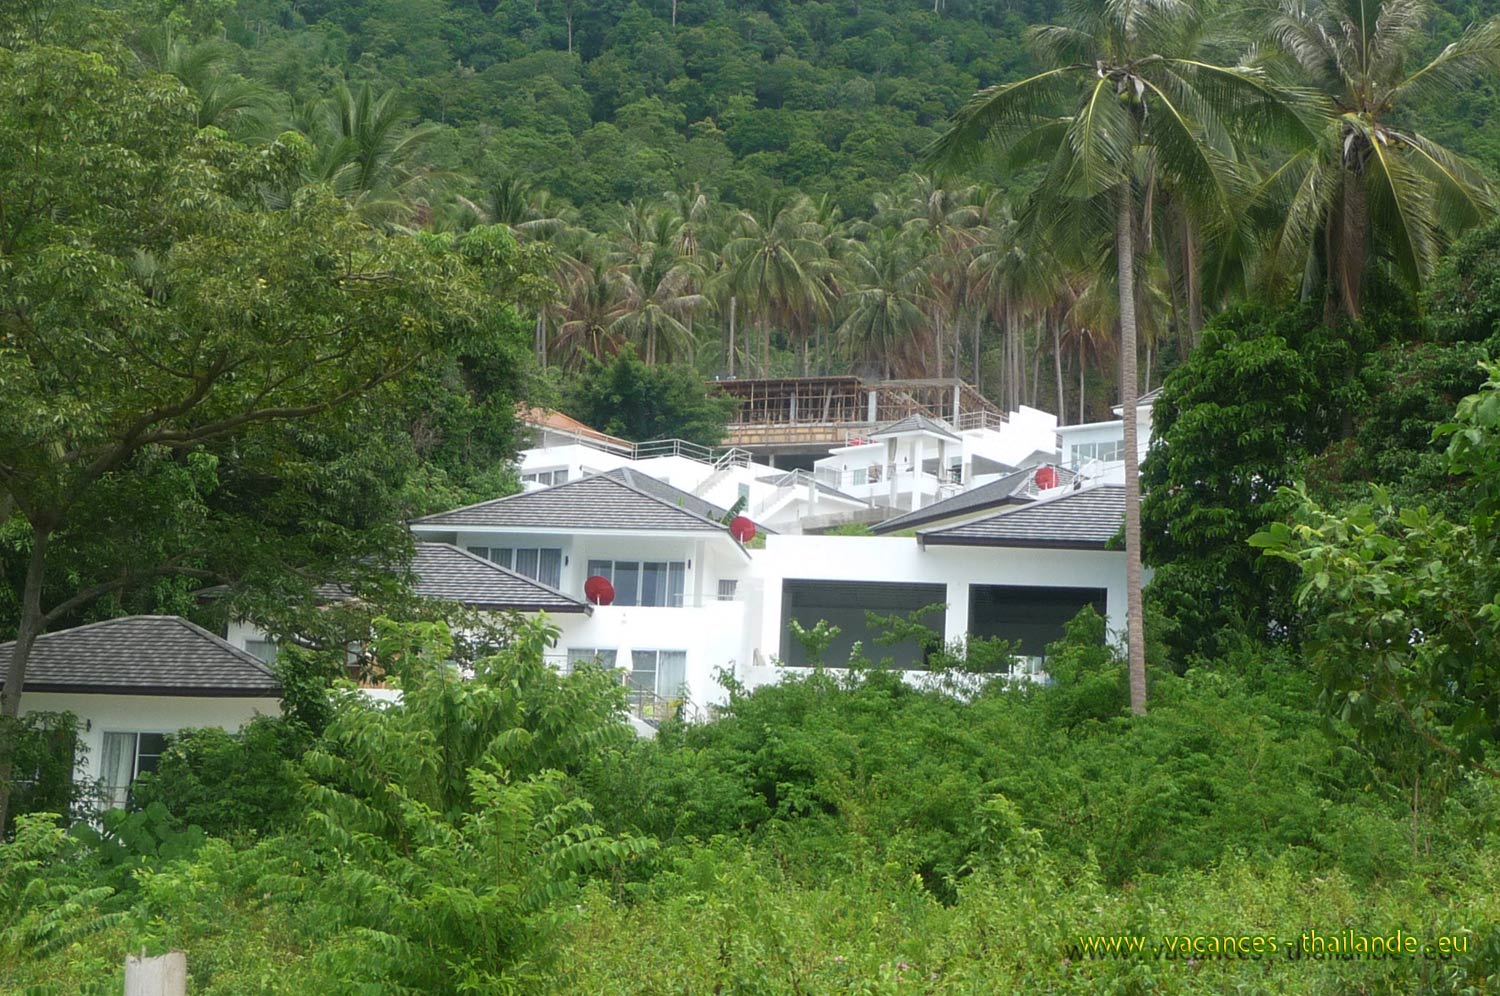 vacances-thailande, photo 22 la maison au milieu de la foret de cocotiers sur le flanc de la montagne  Koh Samui en Thalande,